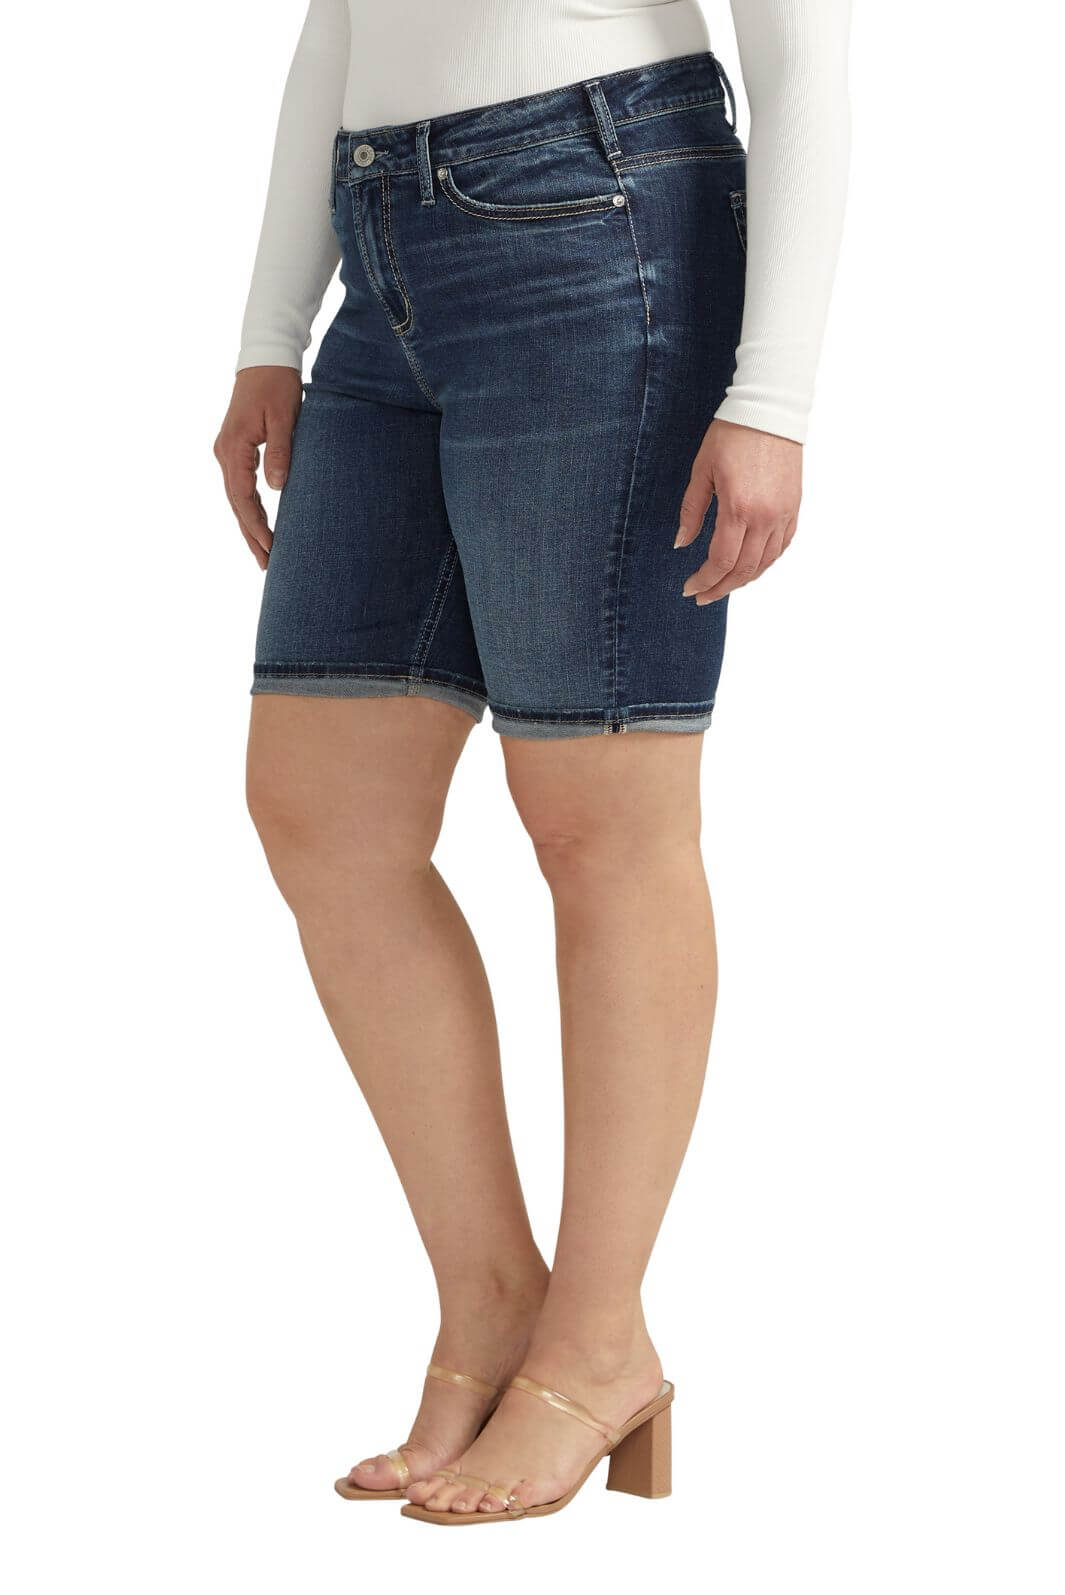 Silver Jeans Plus Size Suki Bermuda Shorts